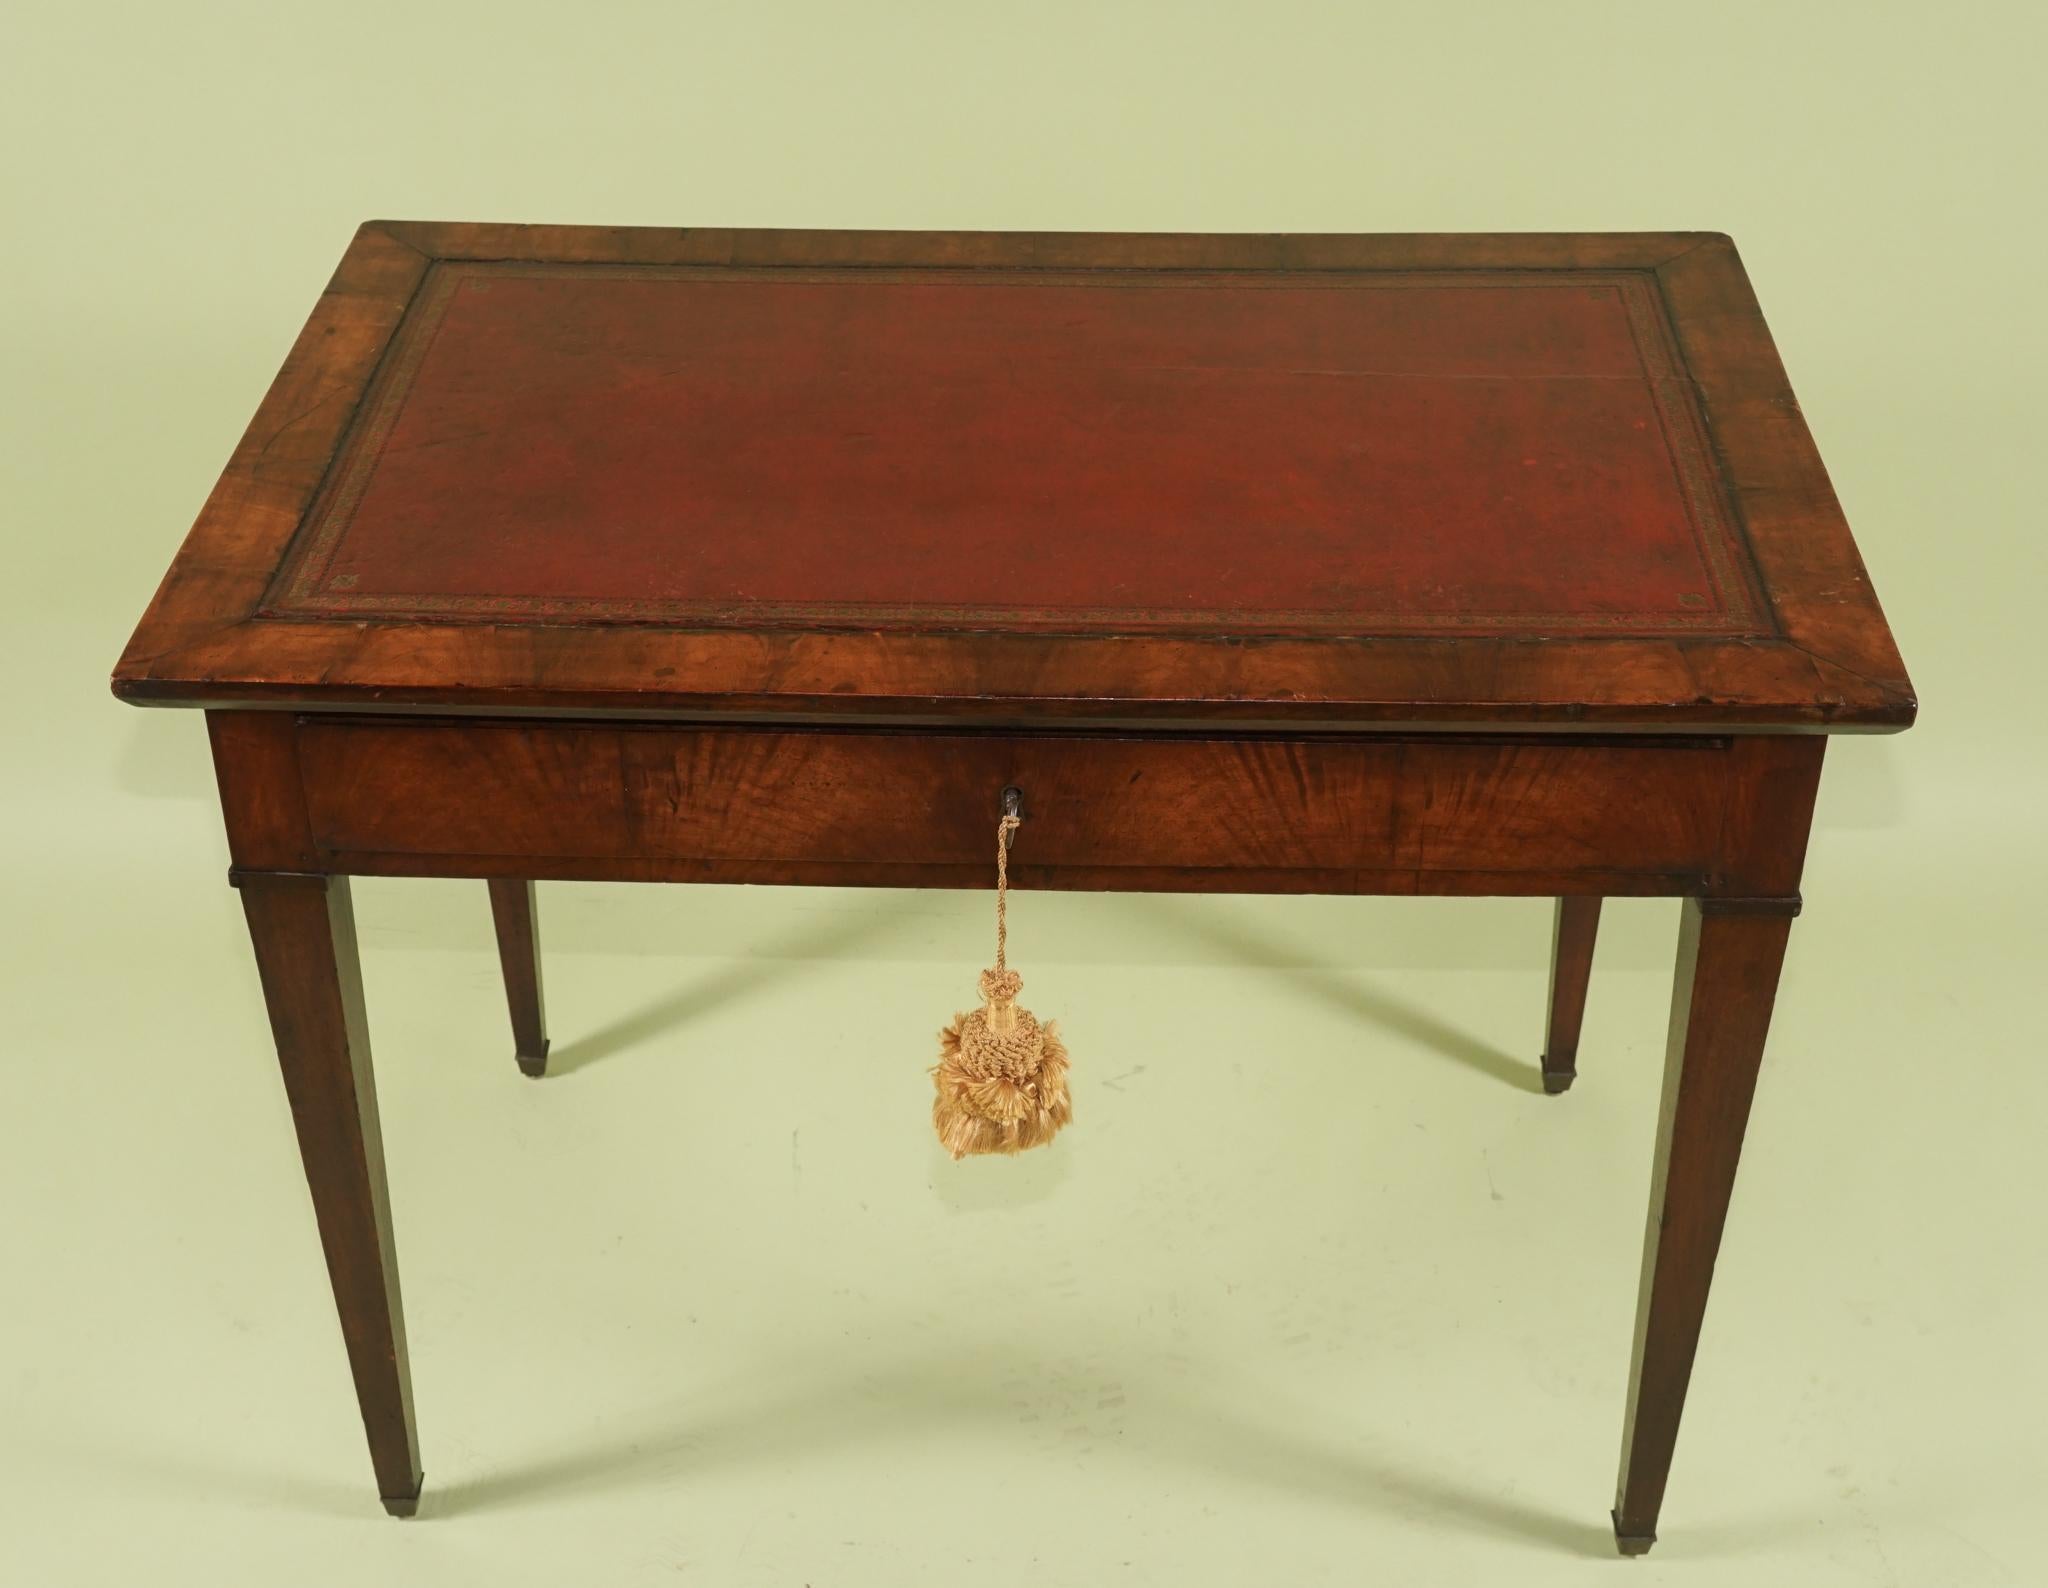 Dieser schöne zeitgenössische Schreibtisch wurde in Frankreich um 1790 bis 1800 aus reichem importiertem Mahagoni gebaut. Die Hölzer wurden sorgfältig ausgewählt, um ein Gesamtmuster aus flammender Maserung um die Schürze des Tisches zu schaffen.